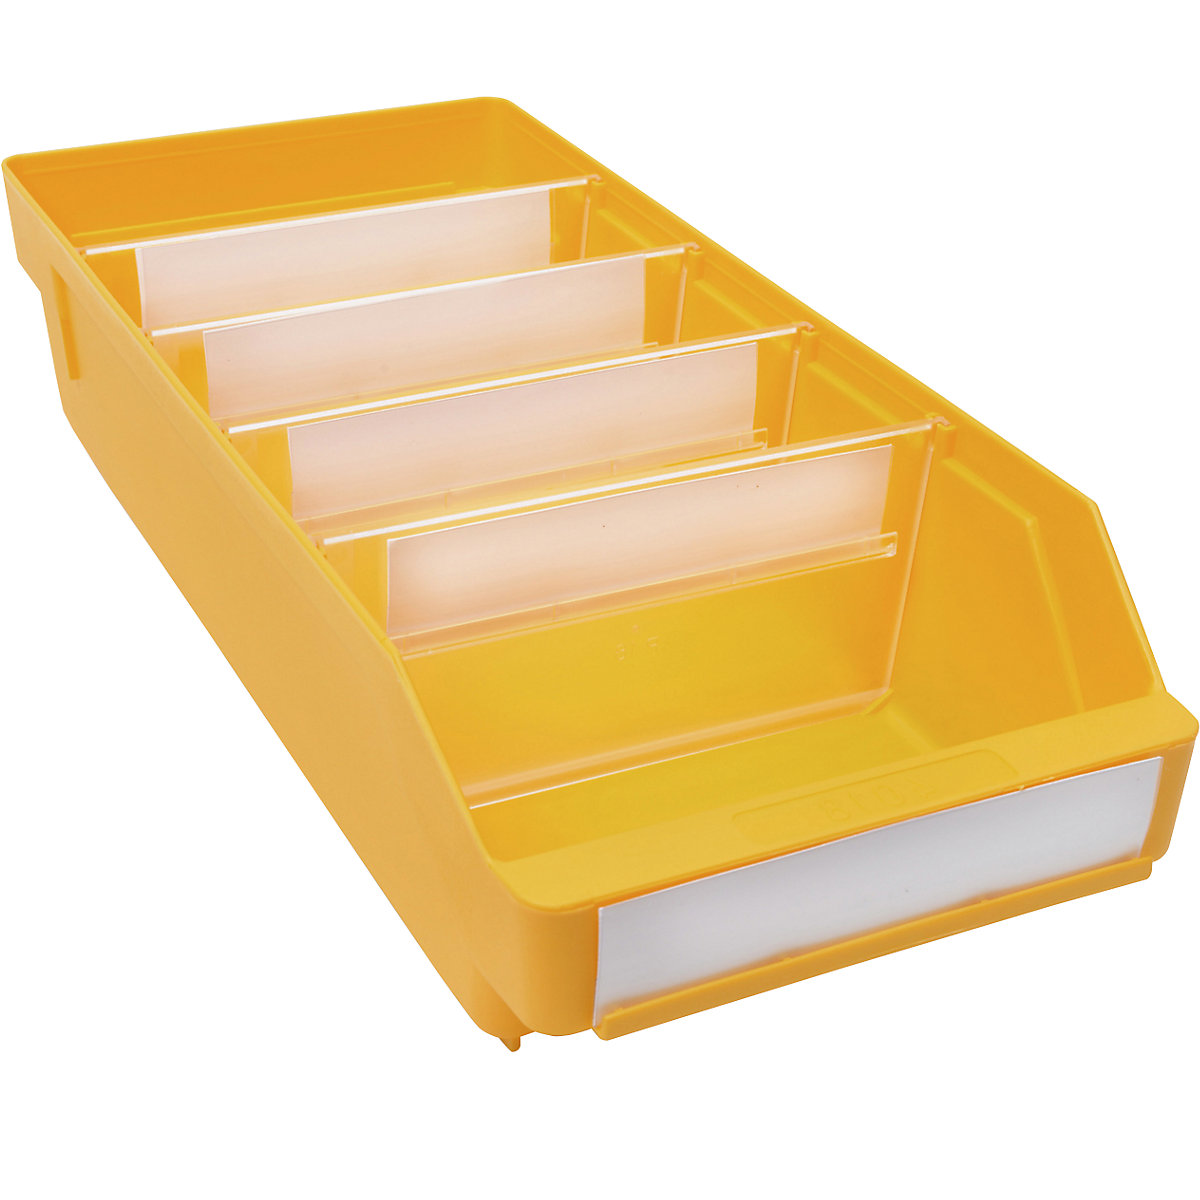 Kutija za regale od polipropilena otpornog na udarce – STEMO, u žutoj boji, DxŠxV 400 x 180 x 95 mm, pak. 20 kom.-17